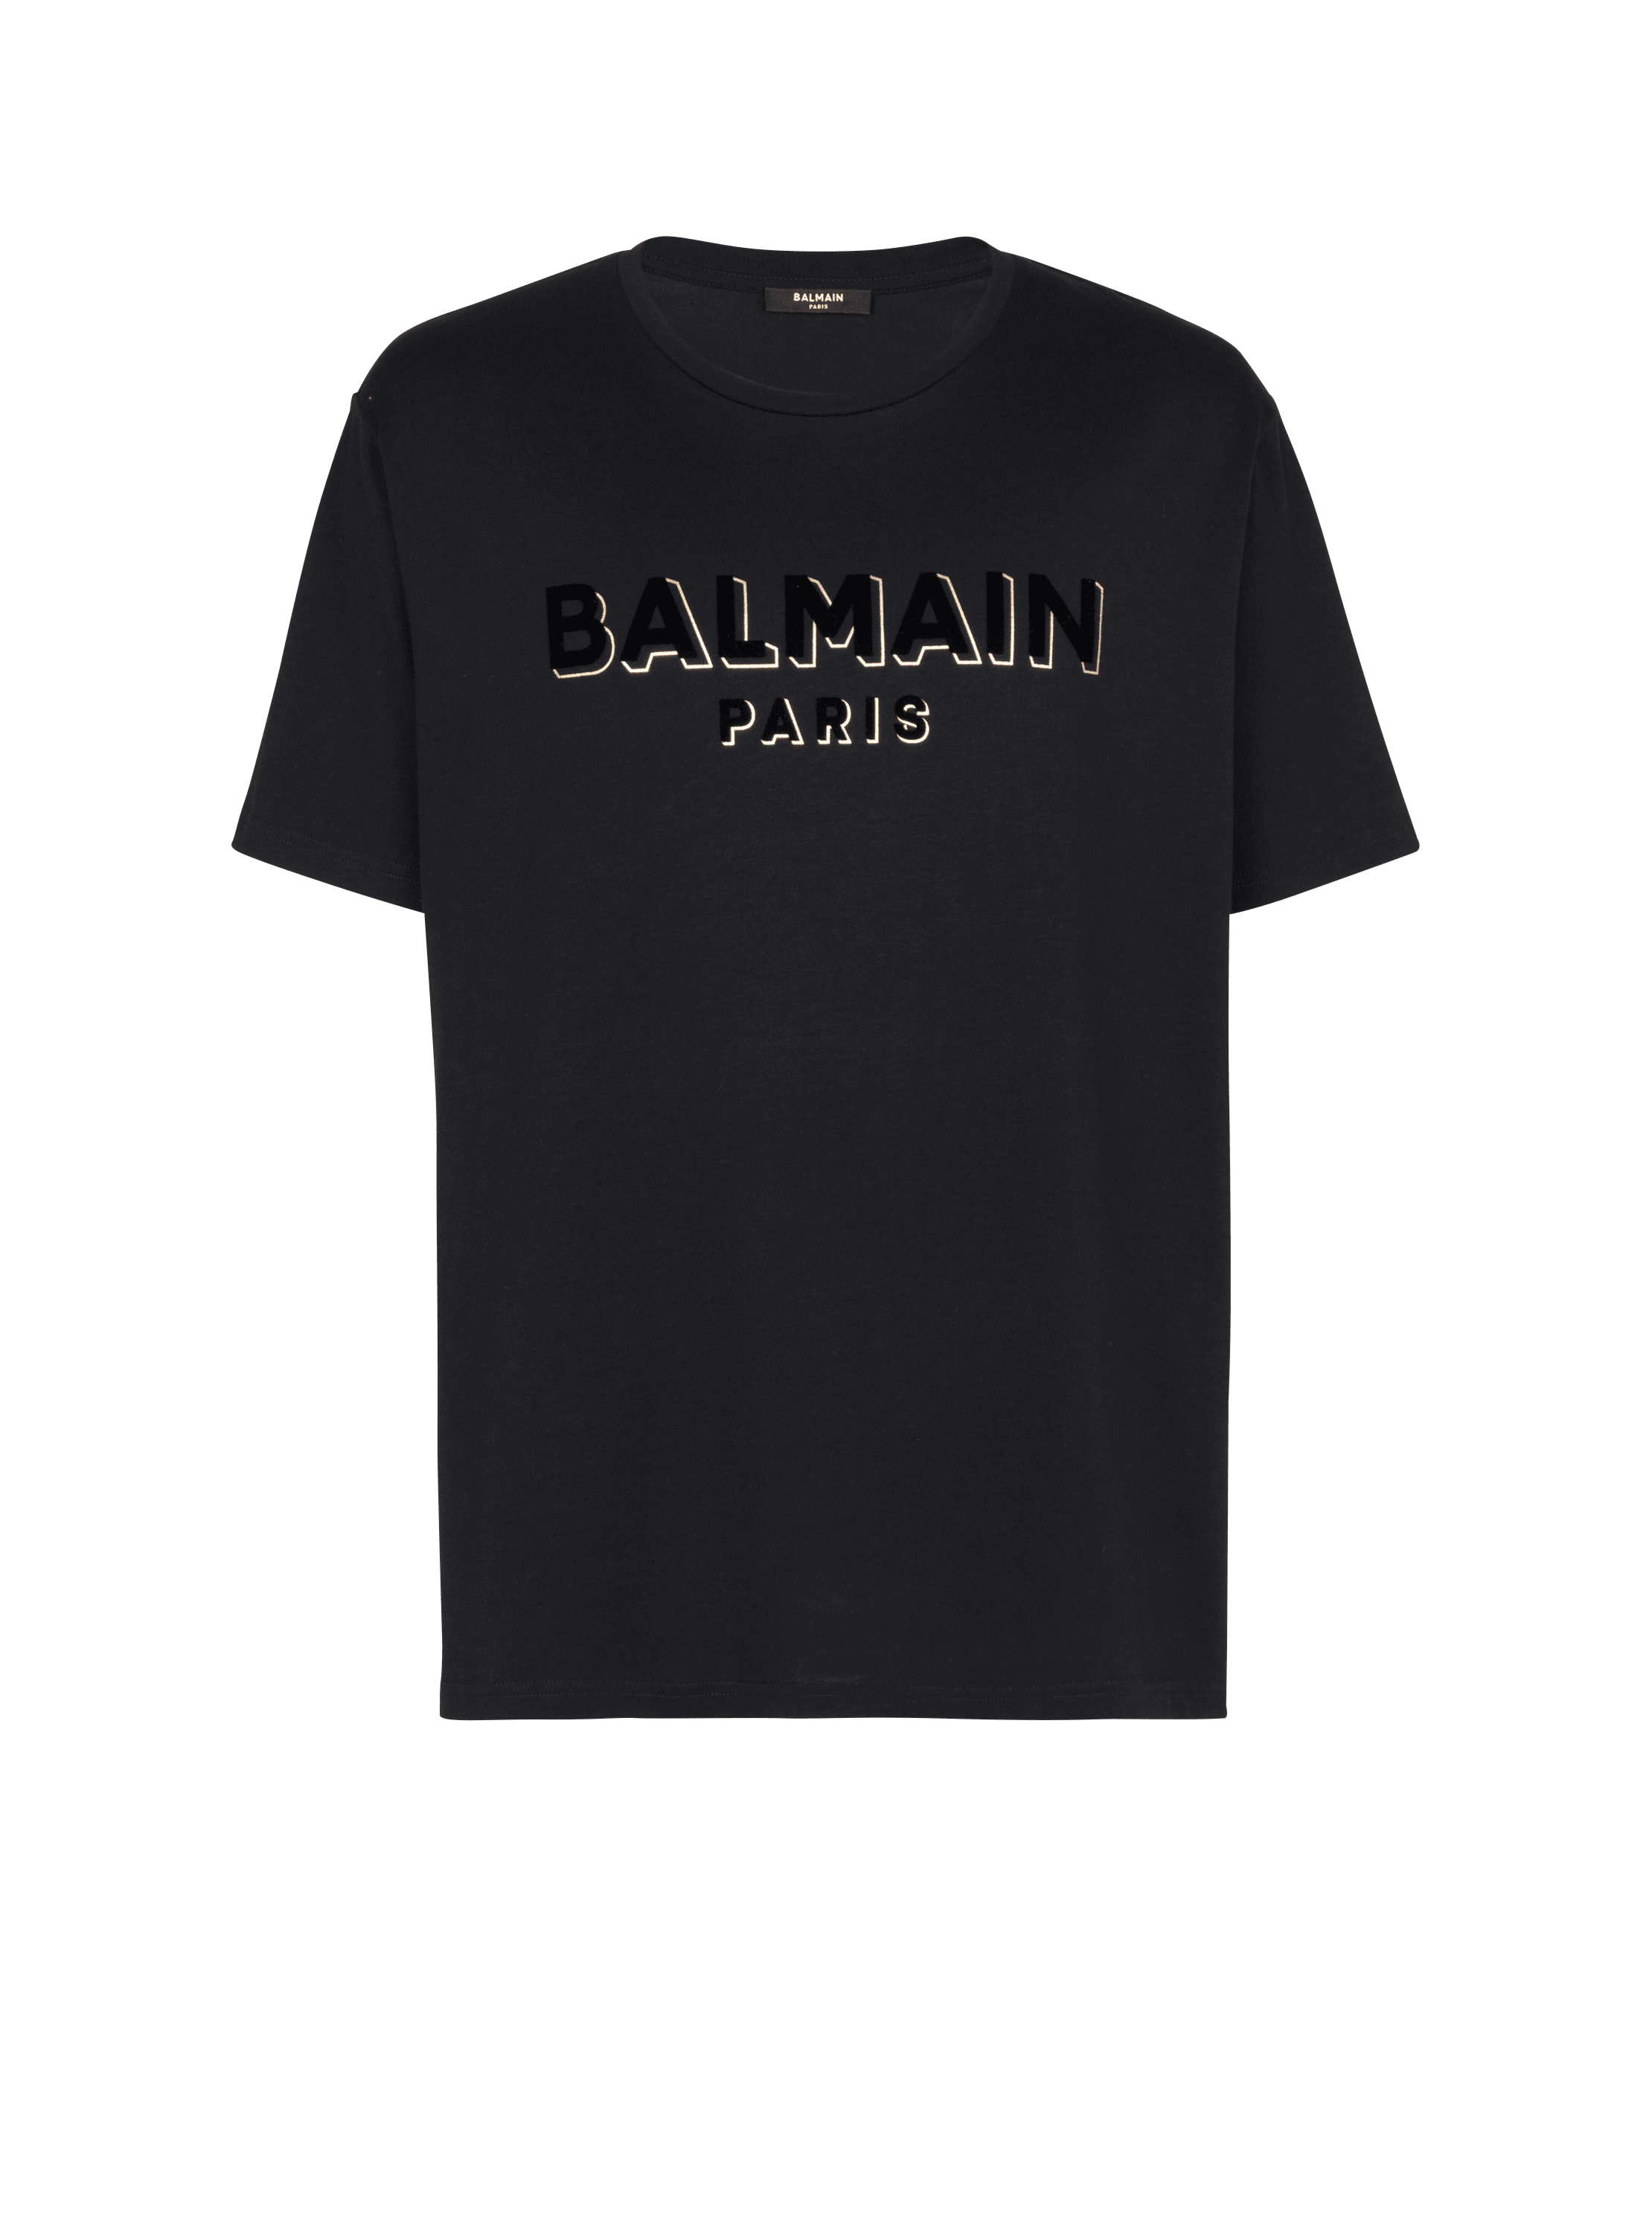 Metallic flocked Balmain T-shirt, black, hi-res